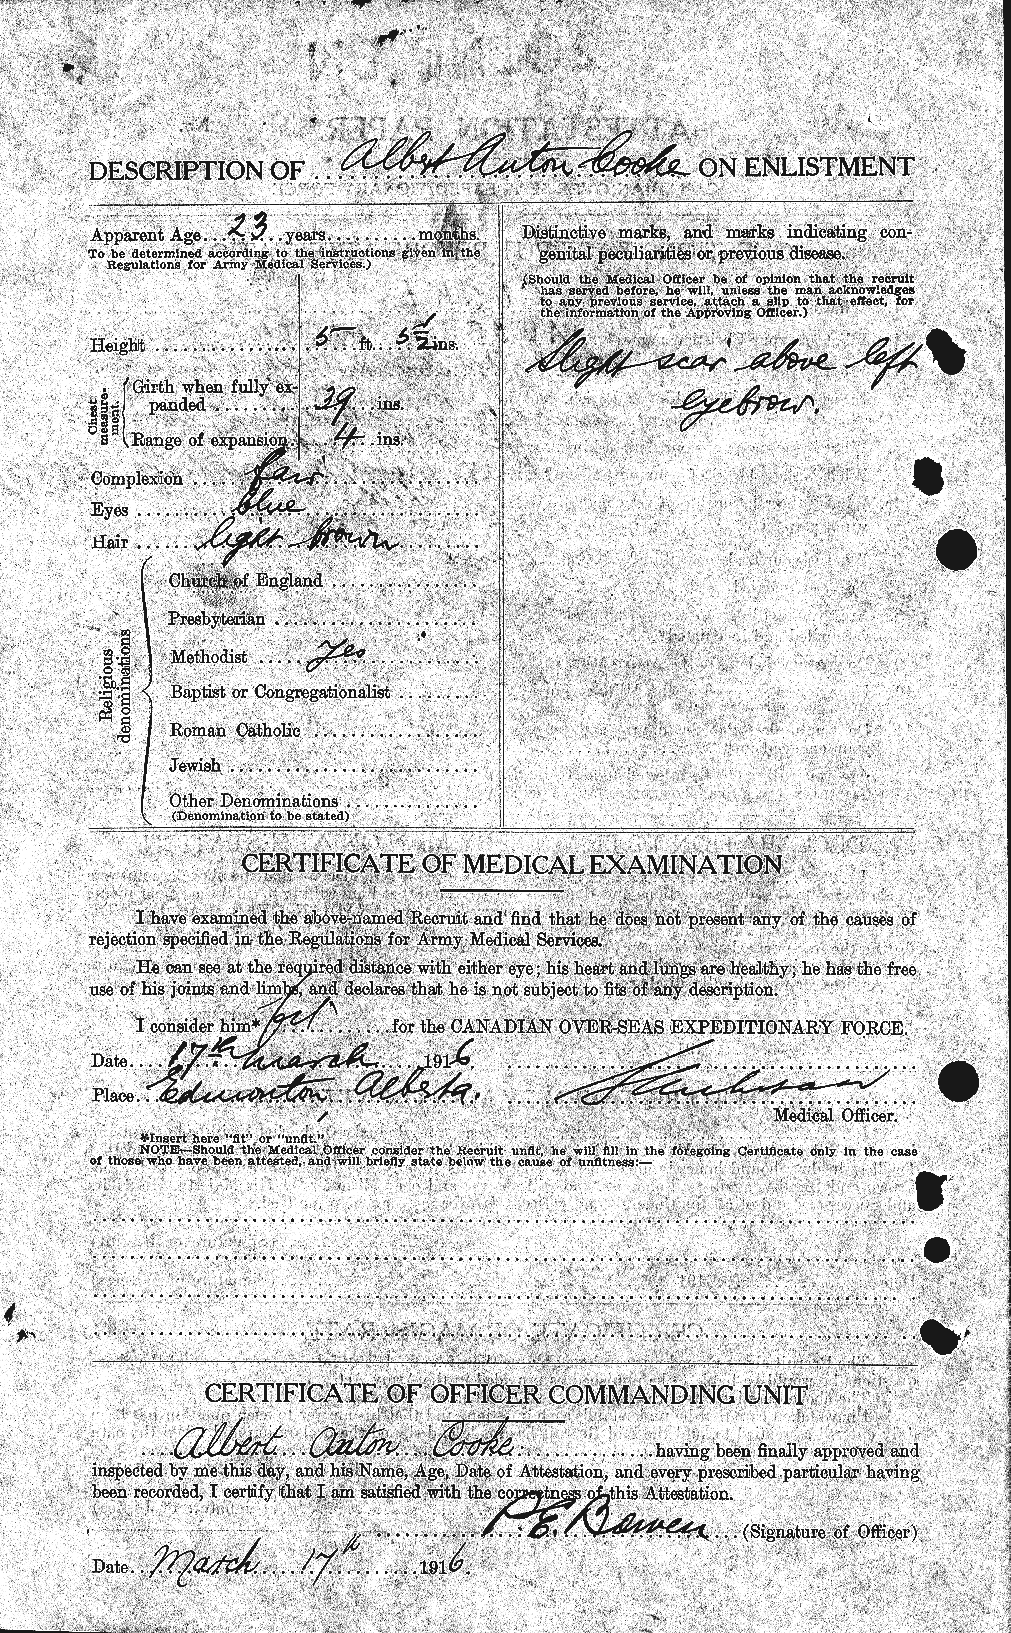 Dossiers du Personnel de la Première Guerre mondiale - CEC 076873b